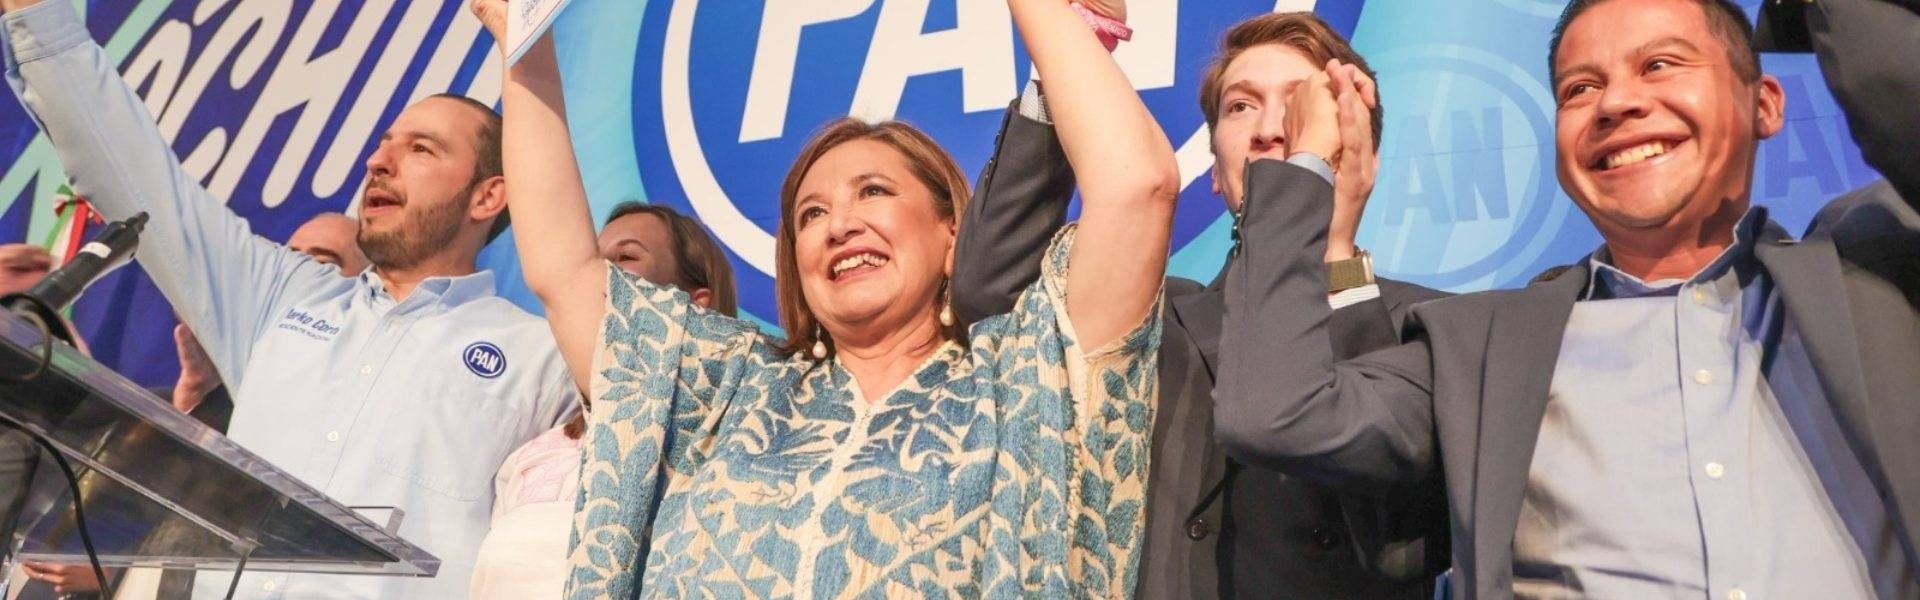 Se registra Xóchitl Gálvez como precandidata para la presidencia por parte del Frente Amplio por México